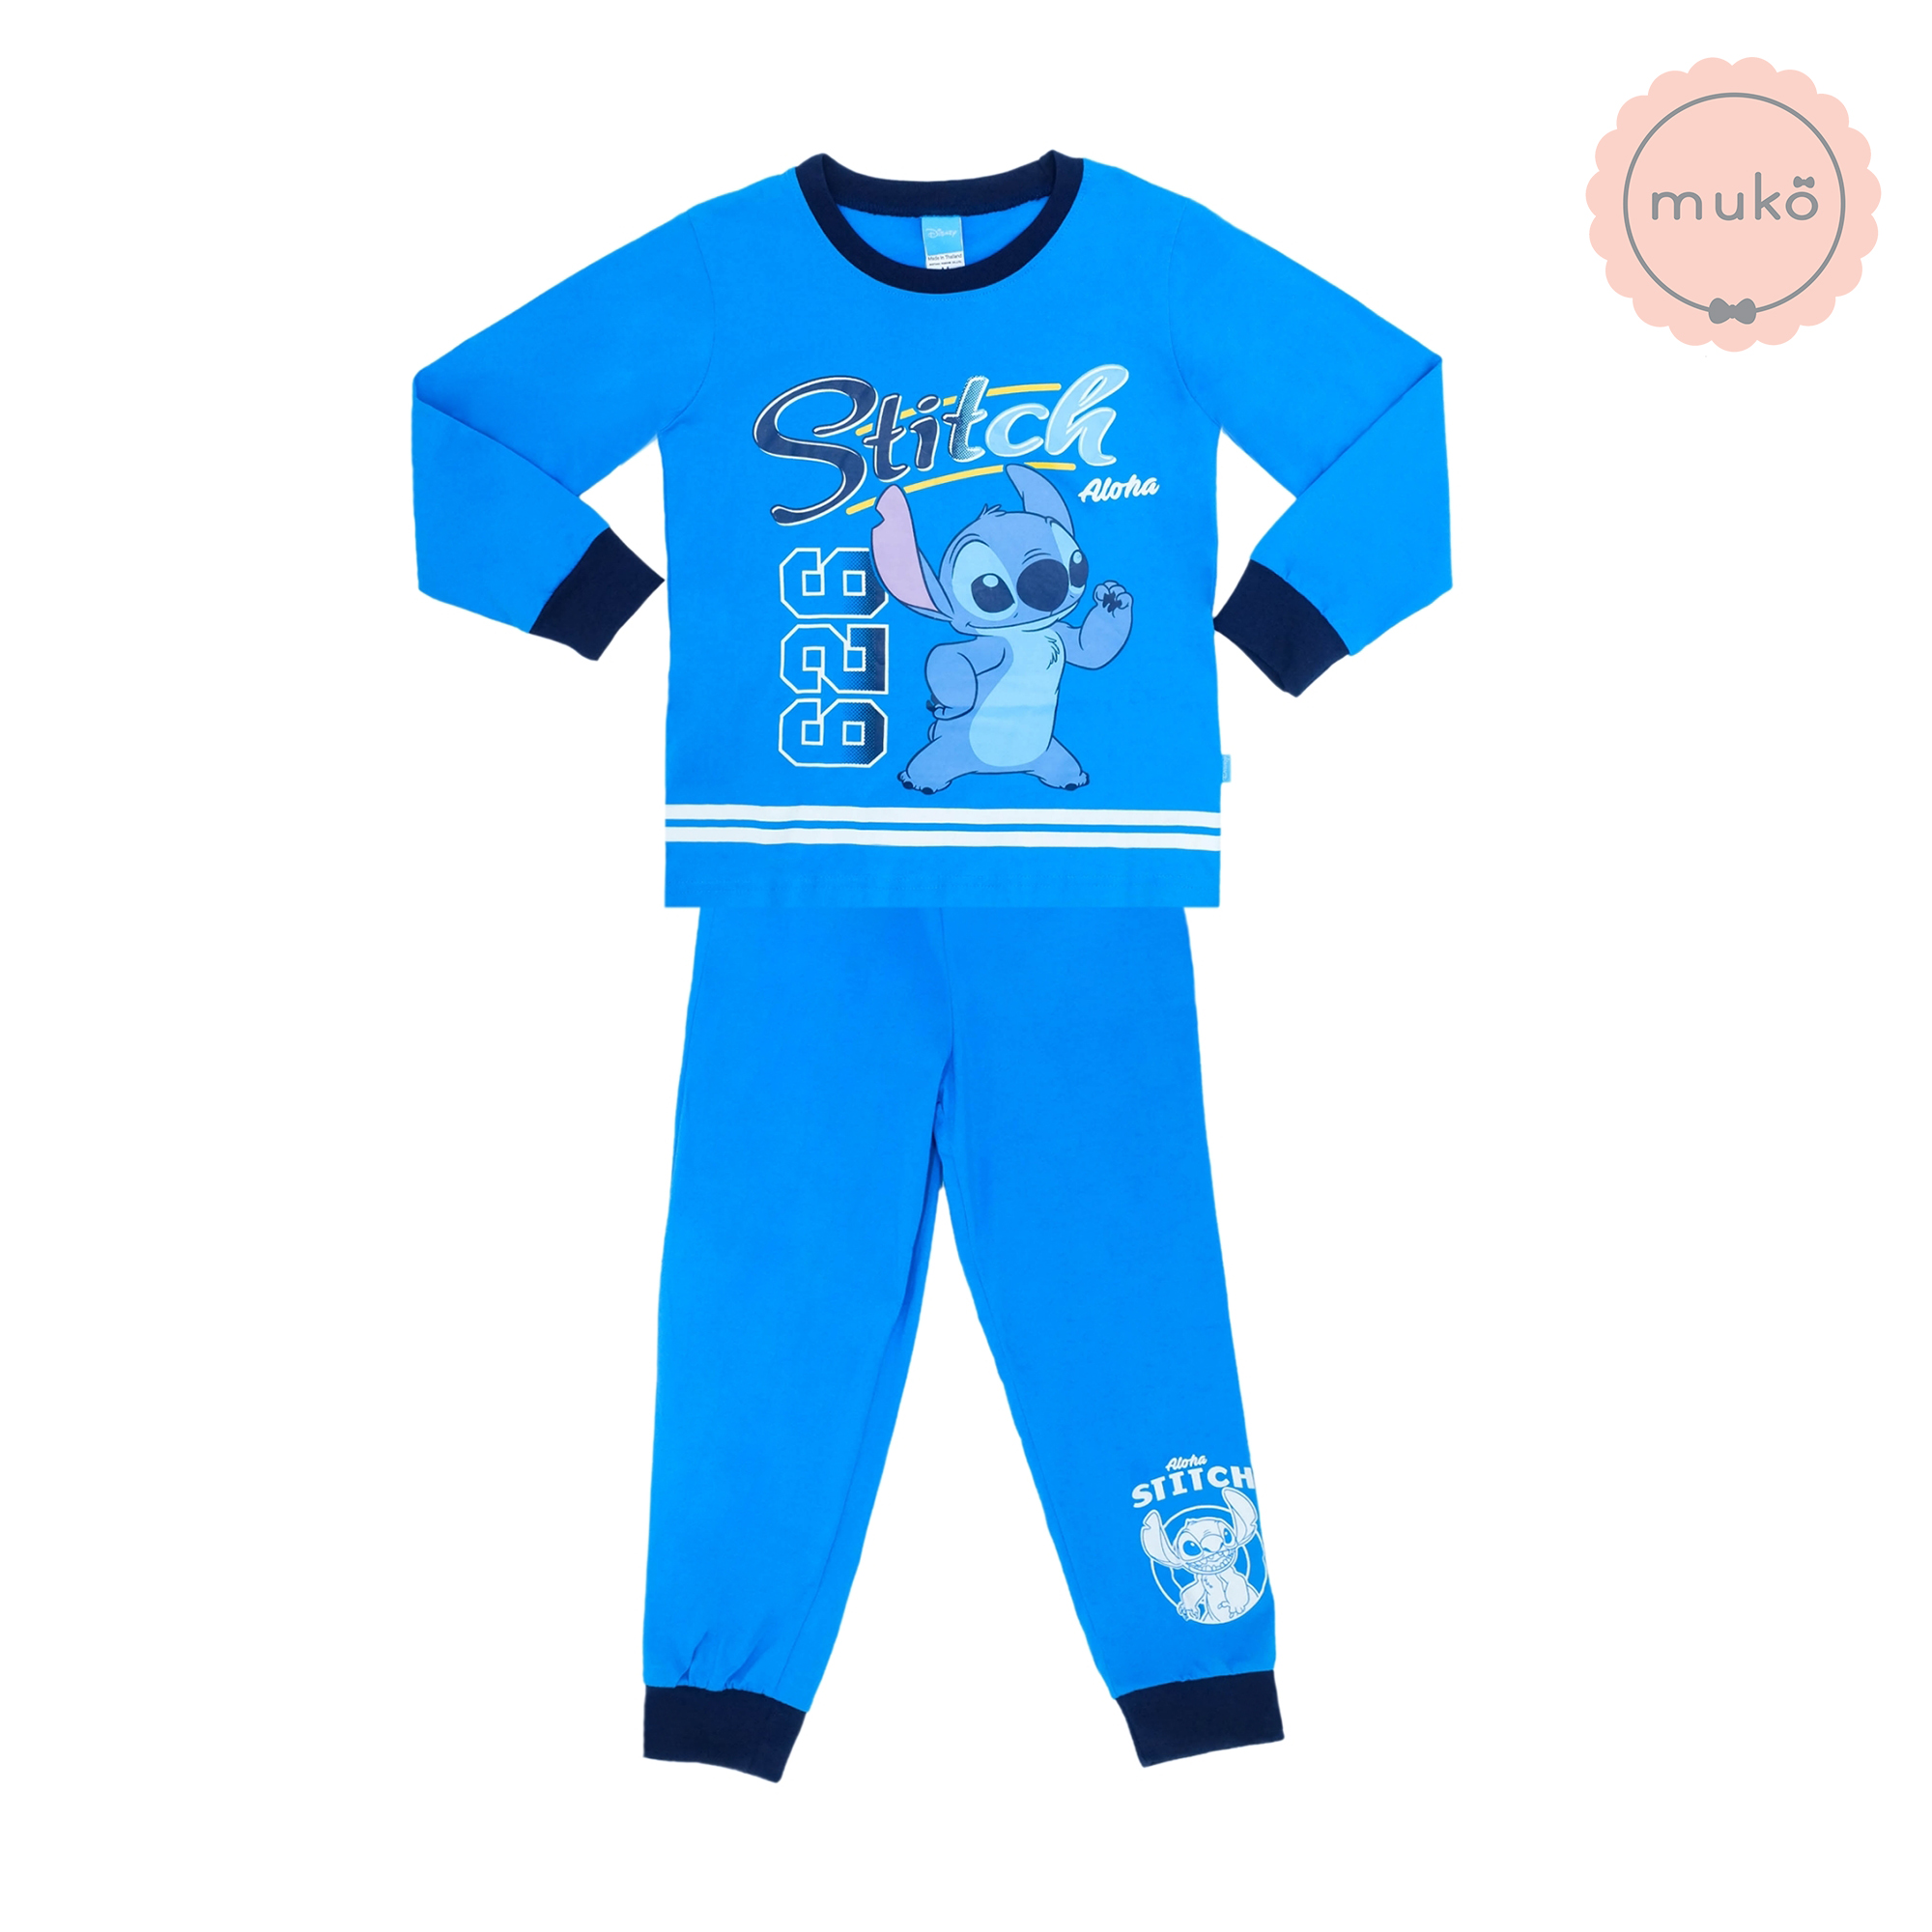 ชุดเด็ก 6-7 ขวบ แขนยาว-ขายาว (Size L) DLS127-690-XL-Blue L ลาย สติช Stitch สีฟ้า (ฟ้าทั้งชุด)